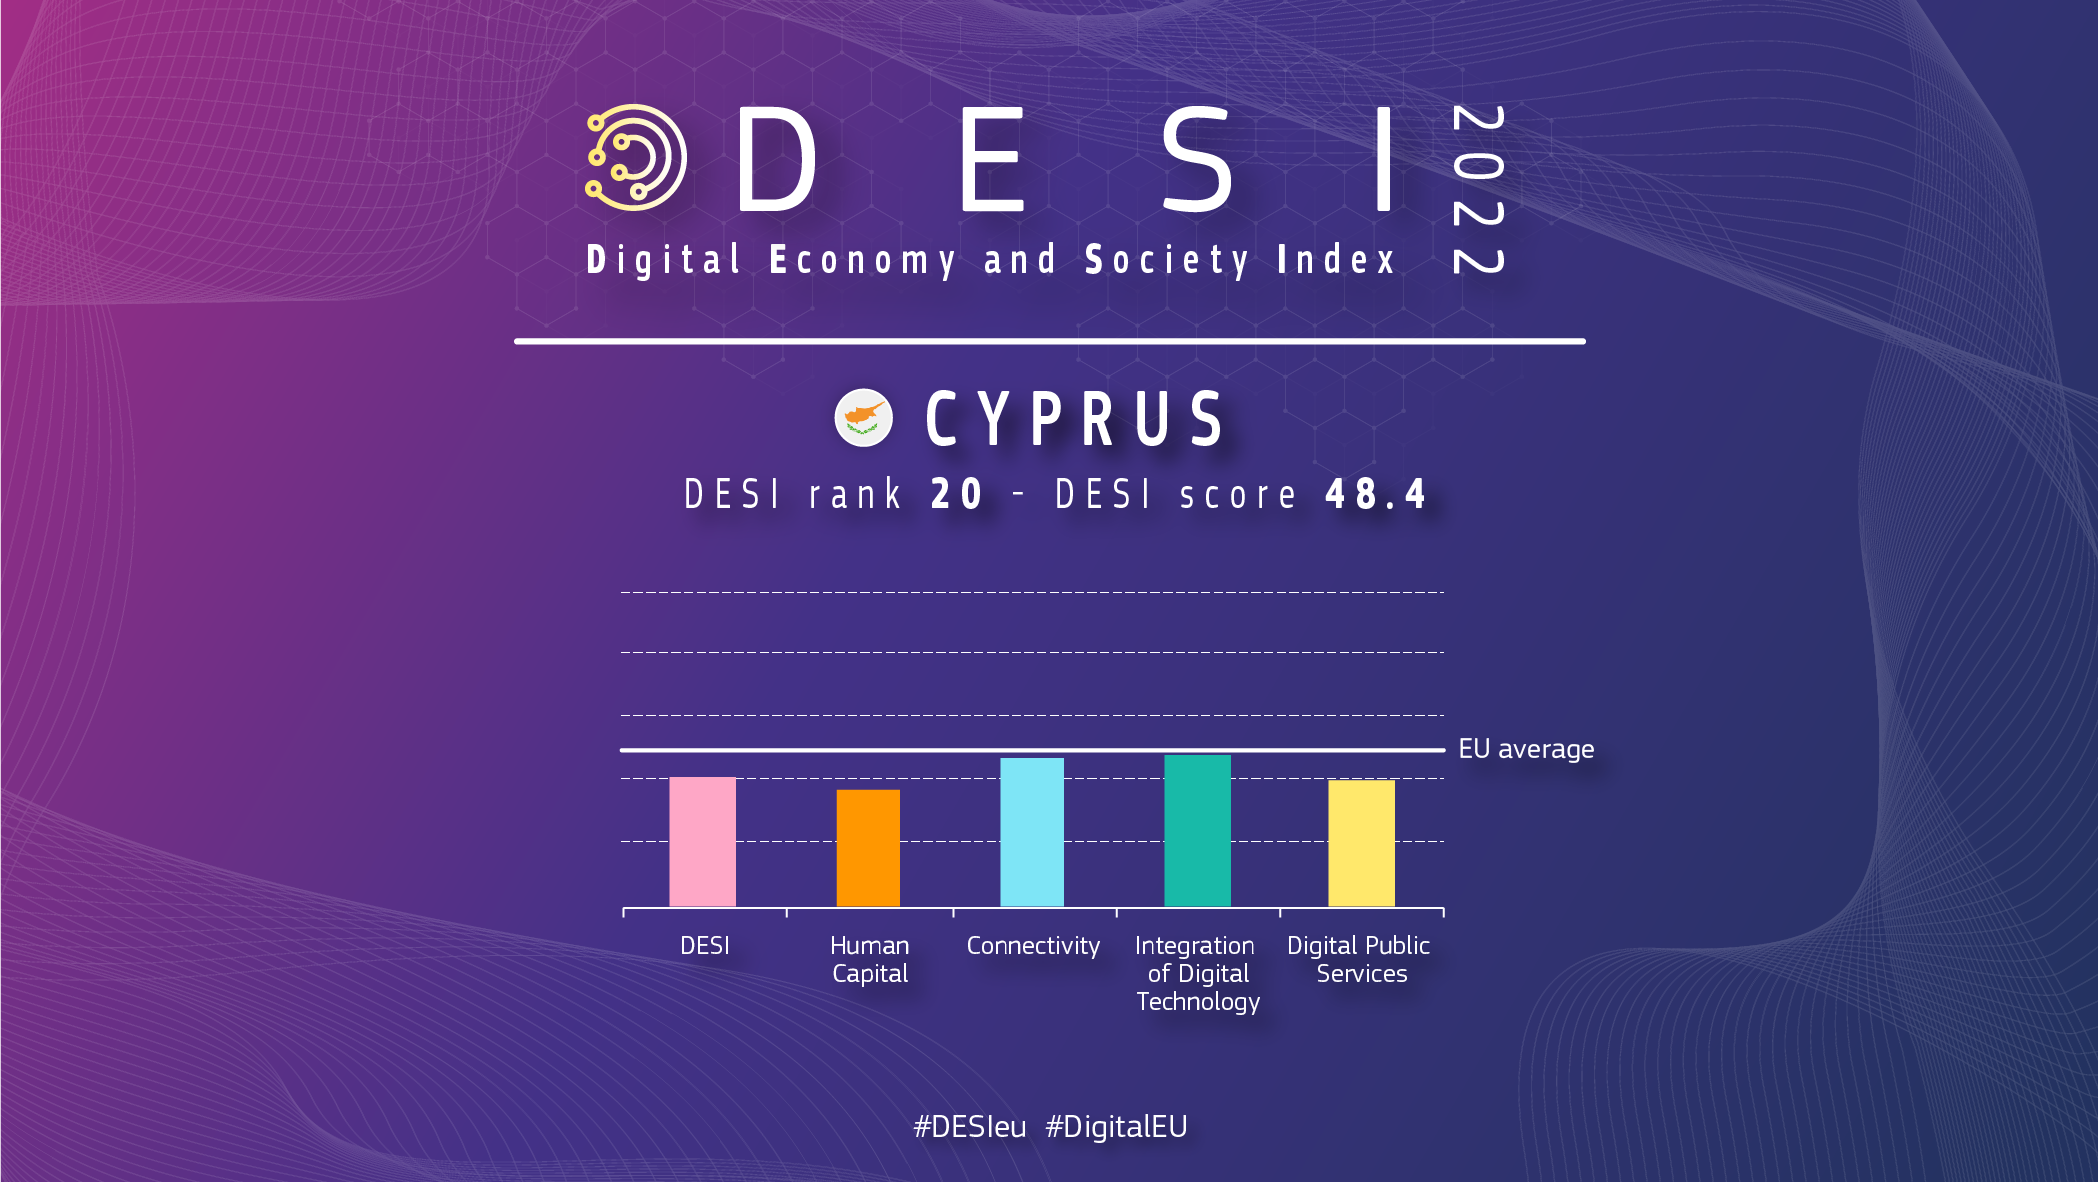 Grafisks pārskats par Kipru DESI, kas rāda rangu 20 un punktu skaitu 48,4